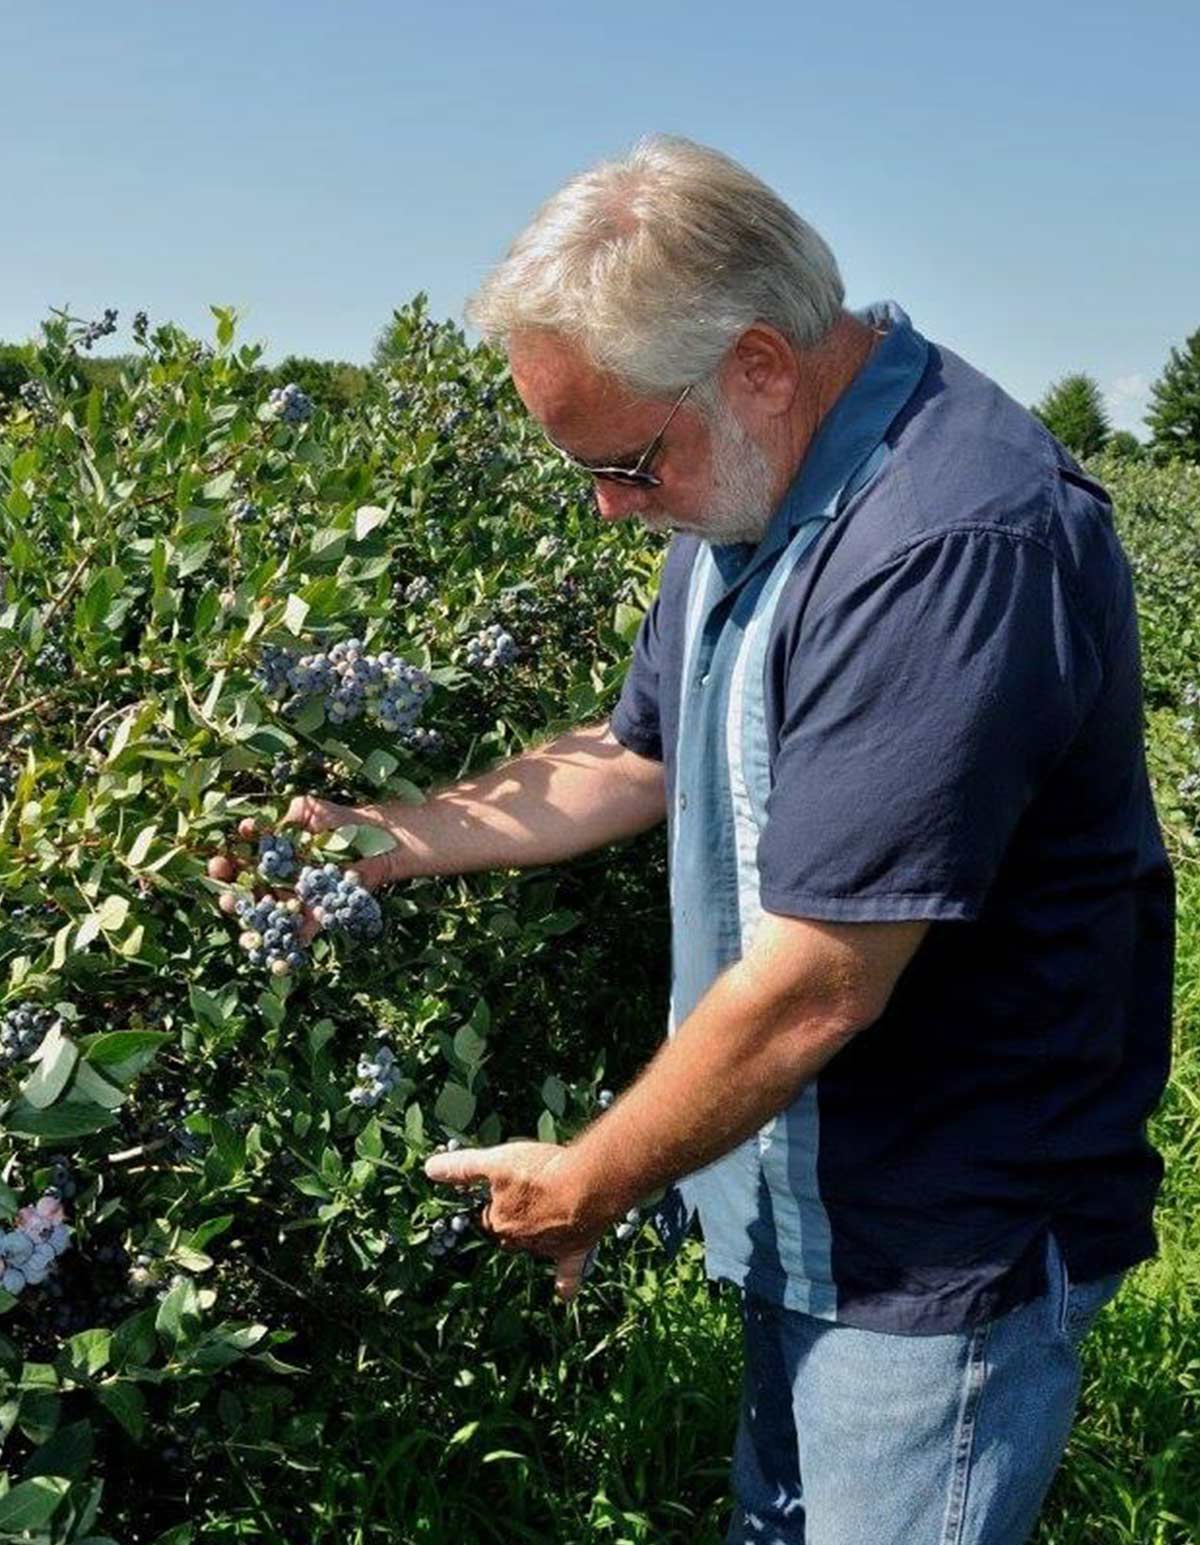 roger checking blueberry bush